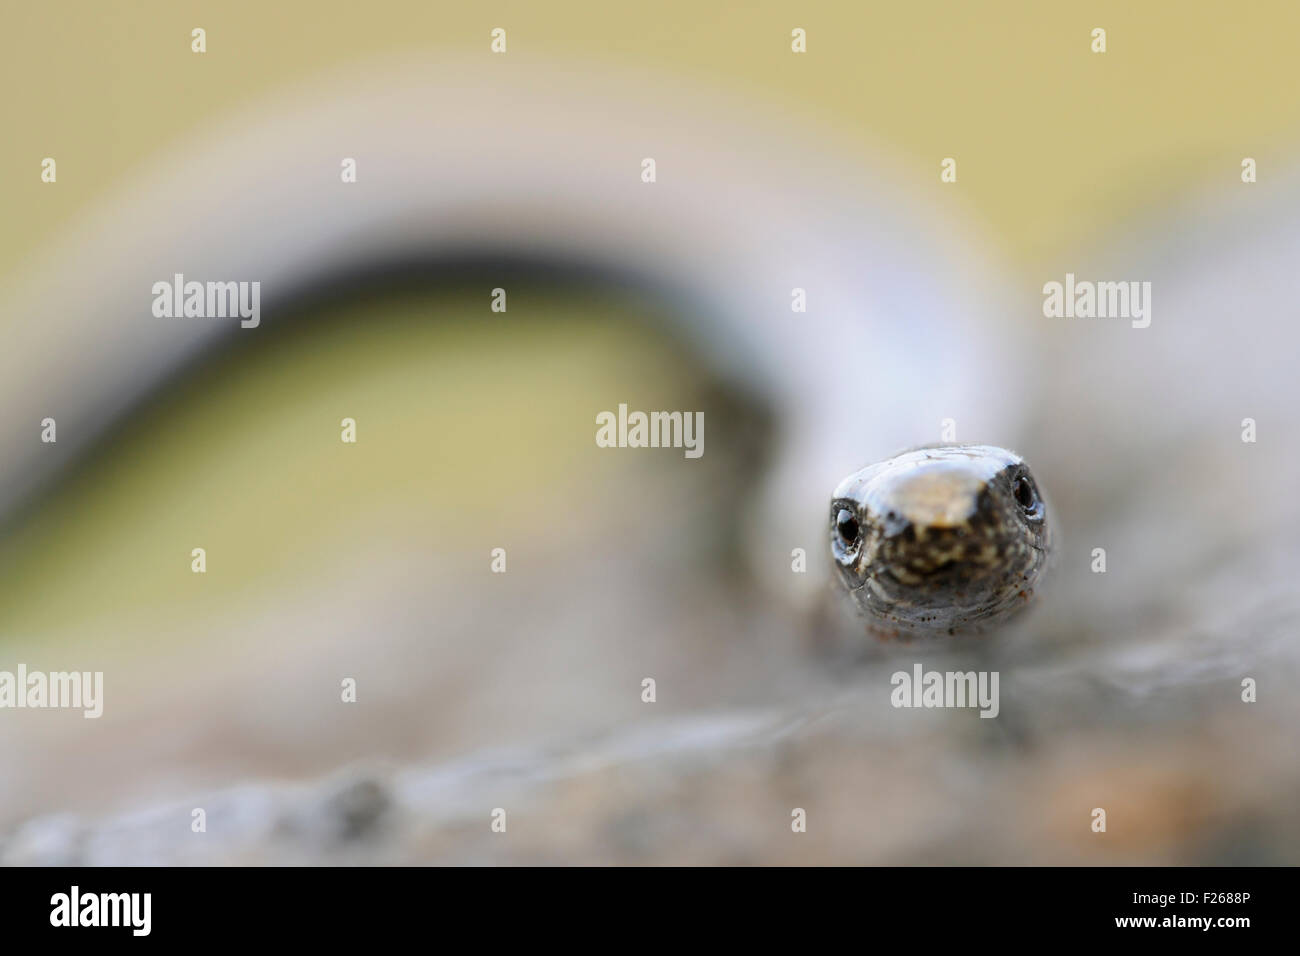 Close-up, headportrait frontale del worm lenta / Blindschleiche ( Anguis fragilis ). Foto Stock